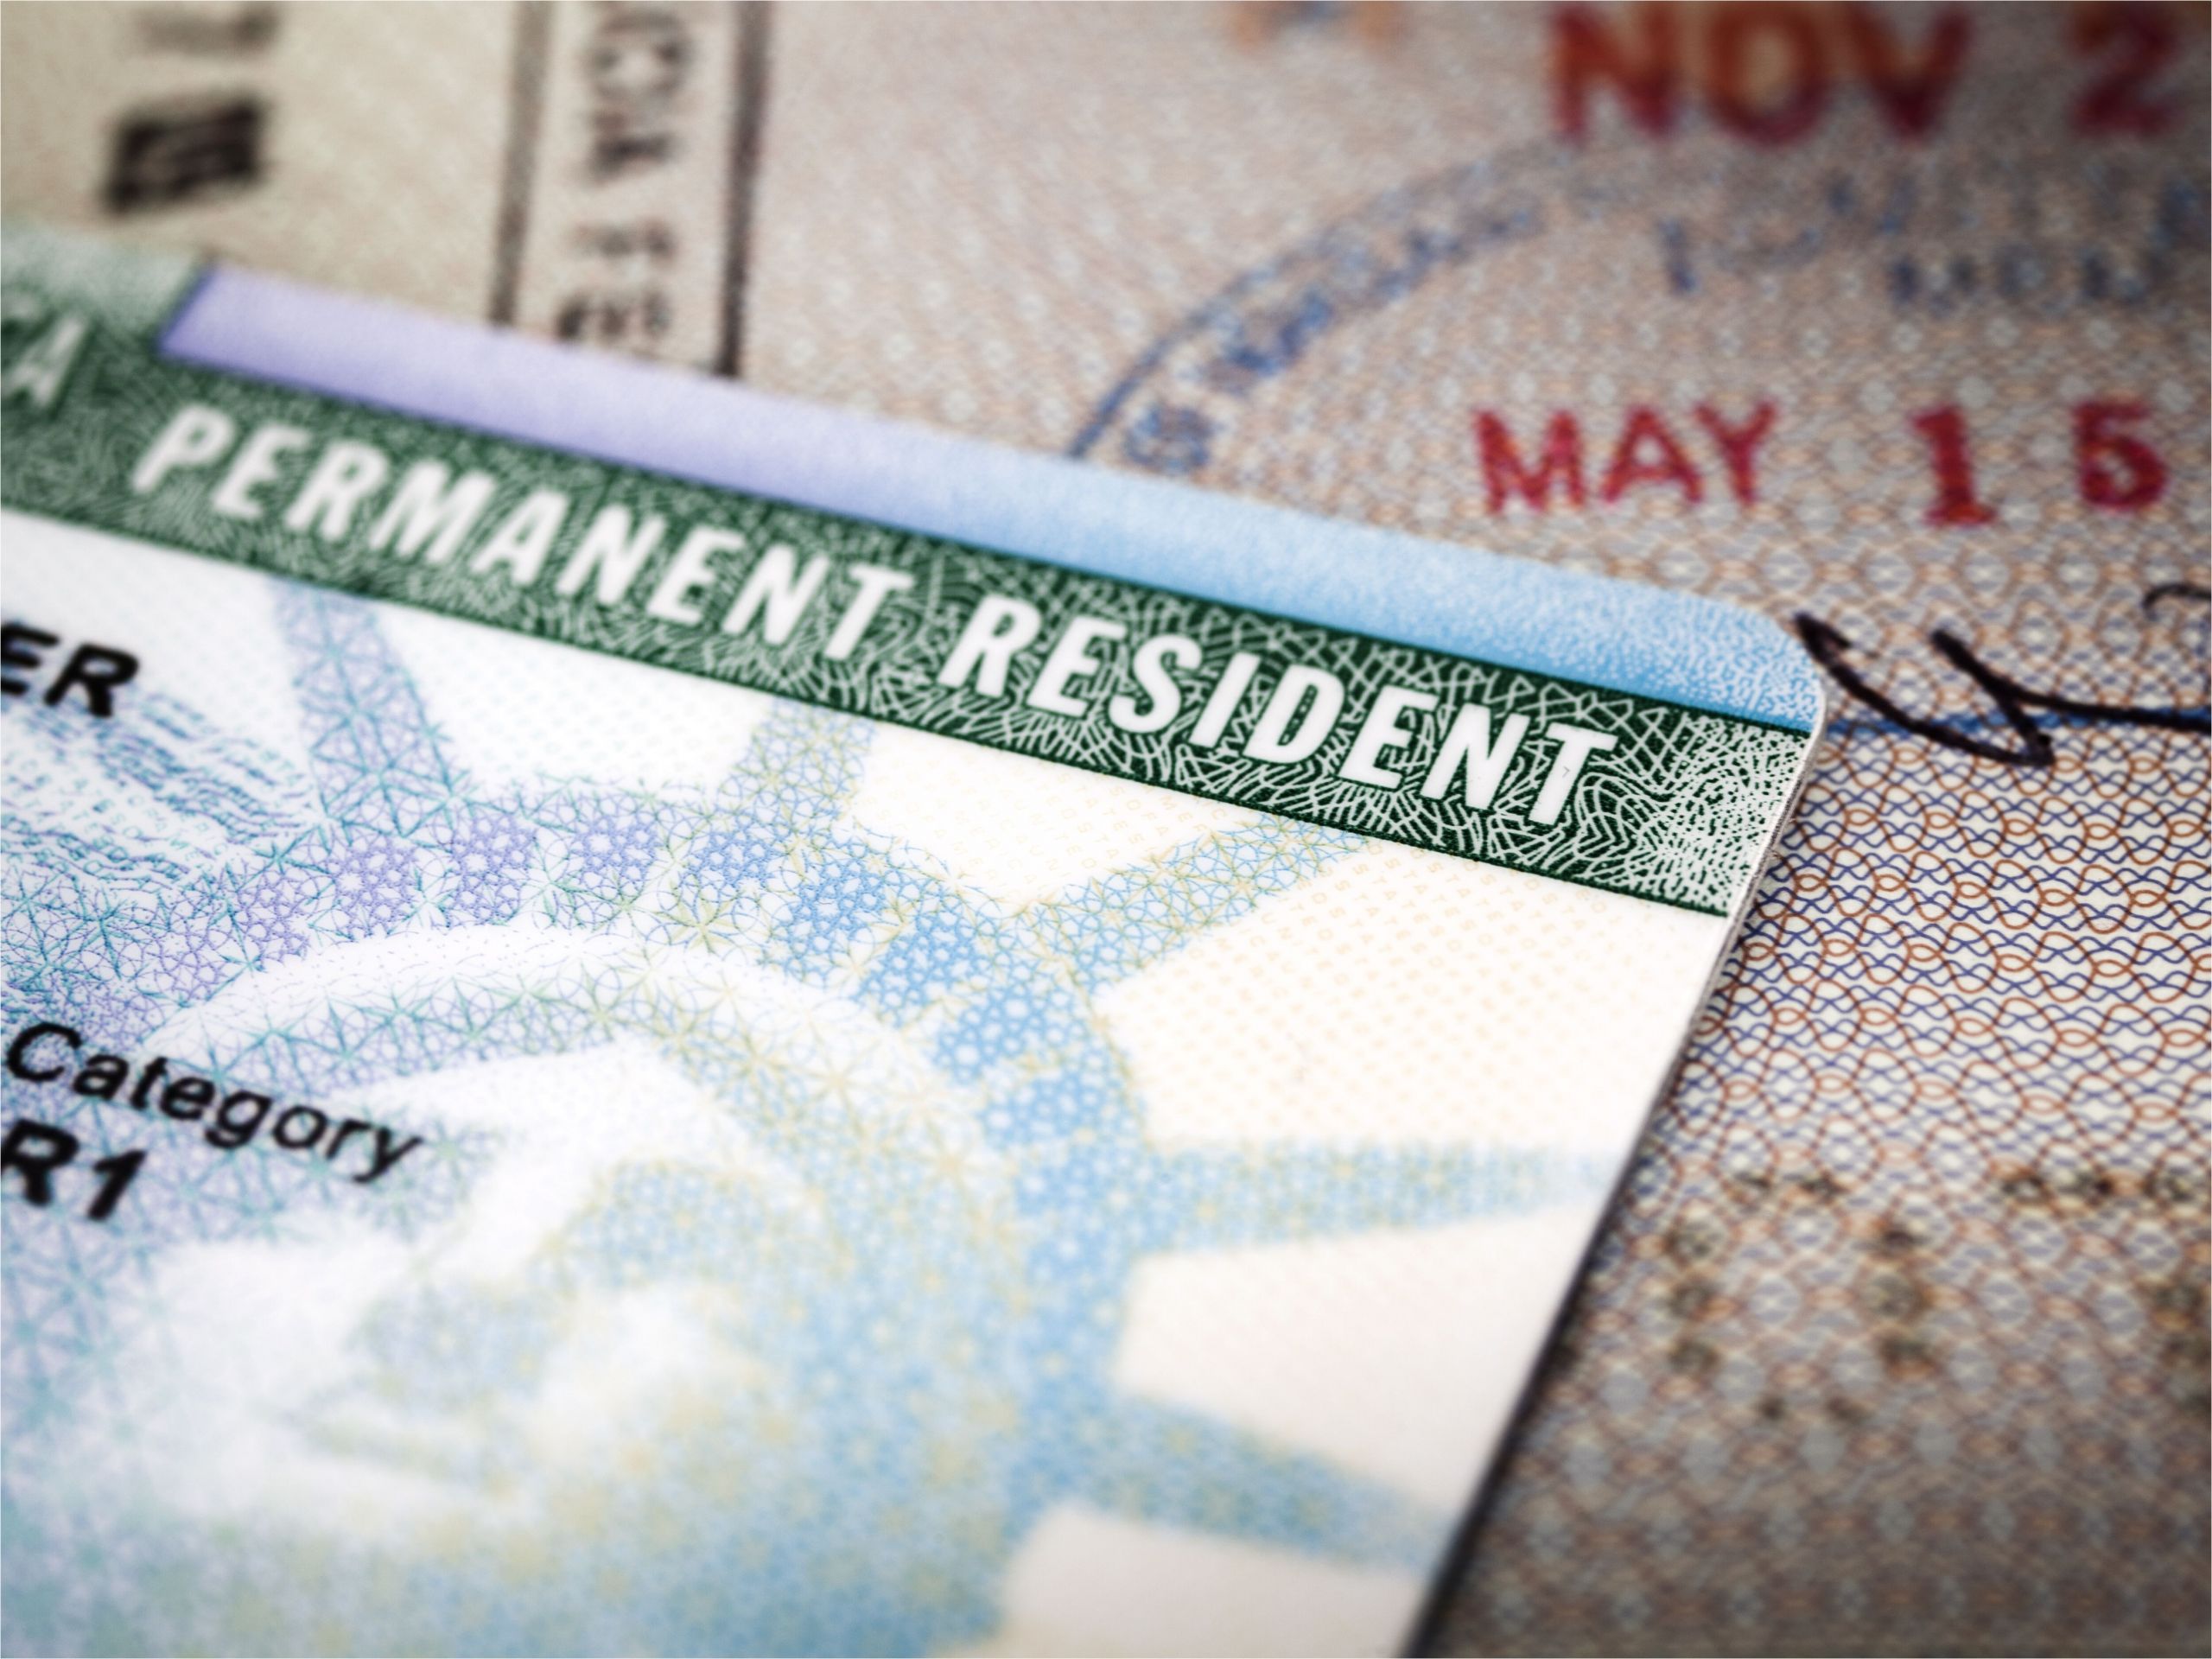 a green card lying on an open passport close up full frame 187591458 5aa6c5caa9d4f900369f3d3d jpg